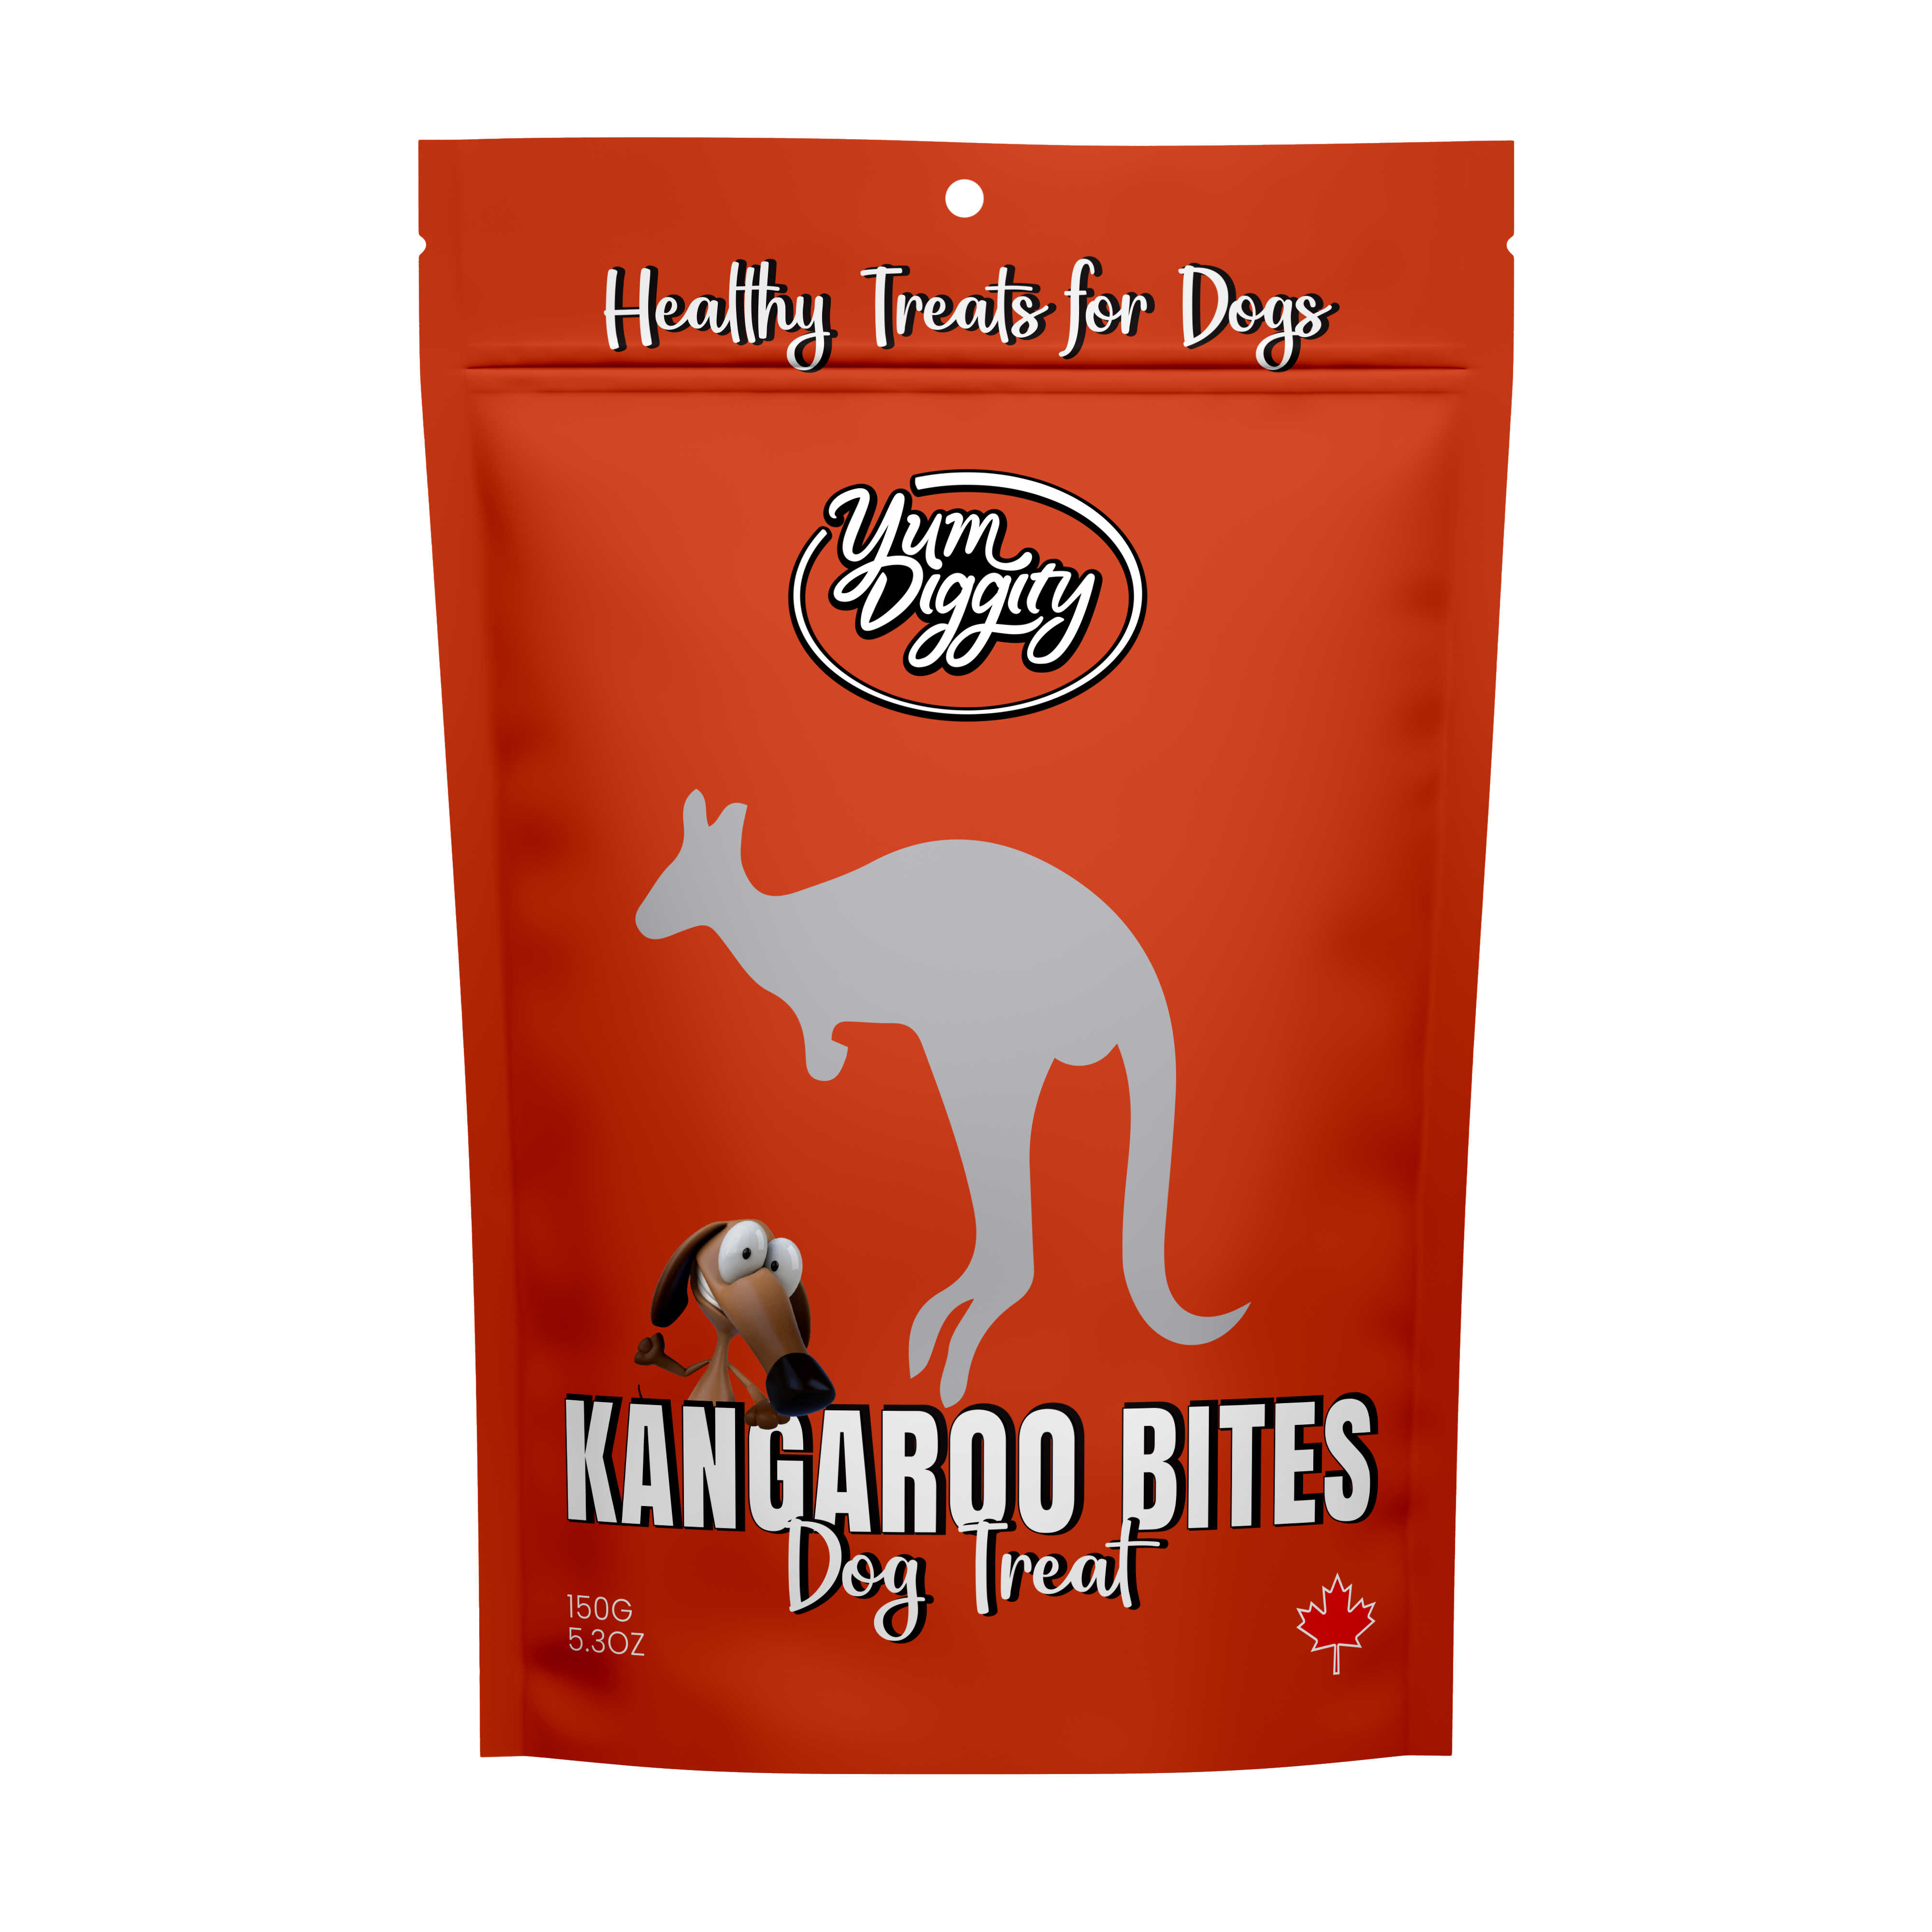 Yum Diggity - Kangaroo "Bites" Leg Cubes